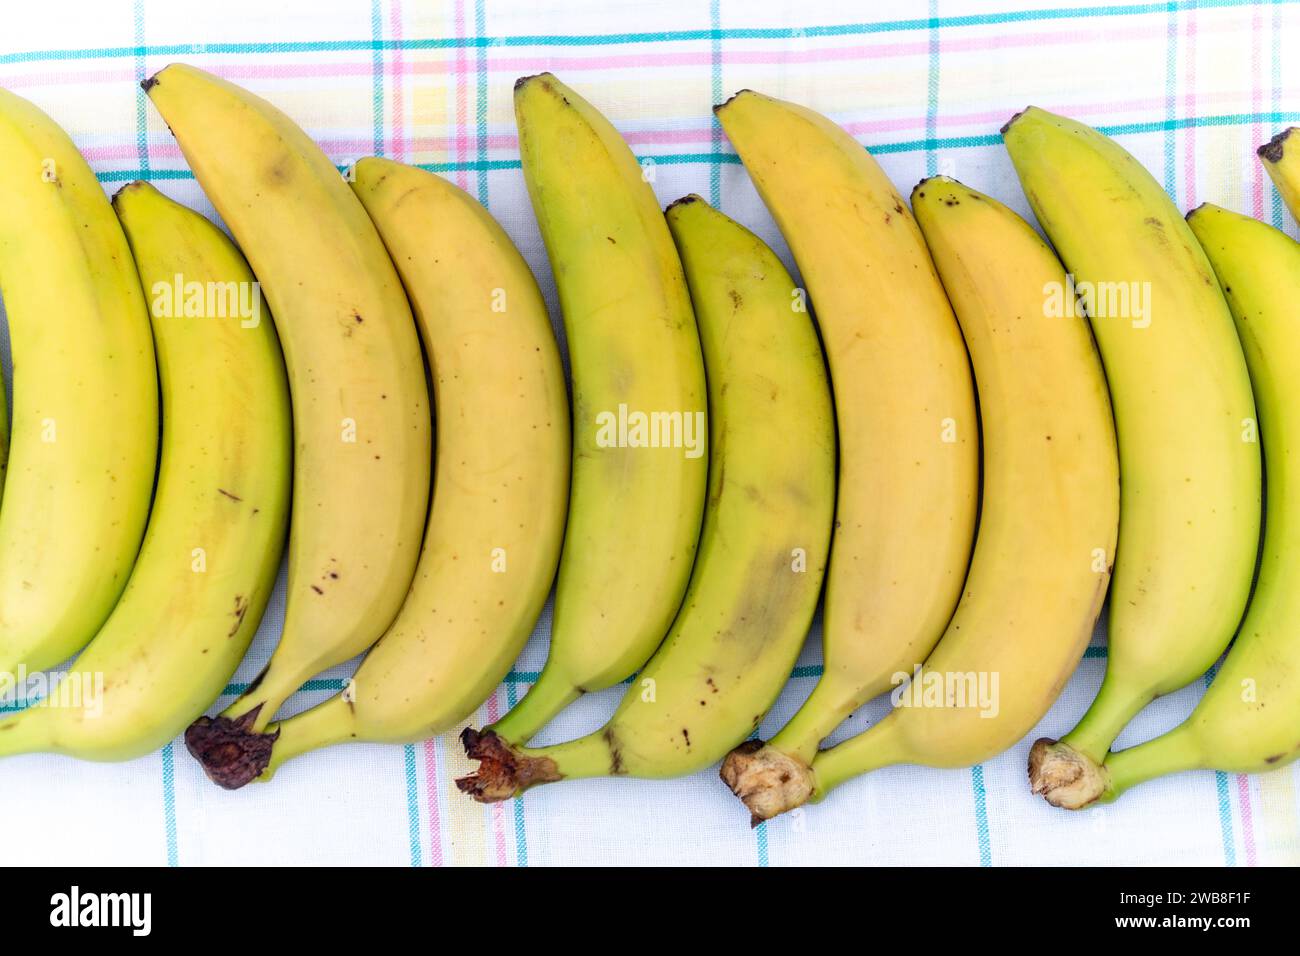 Plátanos maduros, apetitosos, saludables, grandes, dulces, perfectamente alineado en una fila en una mesa de mantel a cuadros sobre un fondo claro. La vista desde la parte superior. H Foto de stock